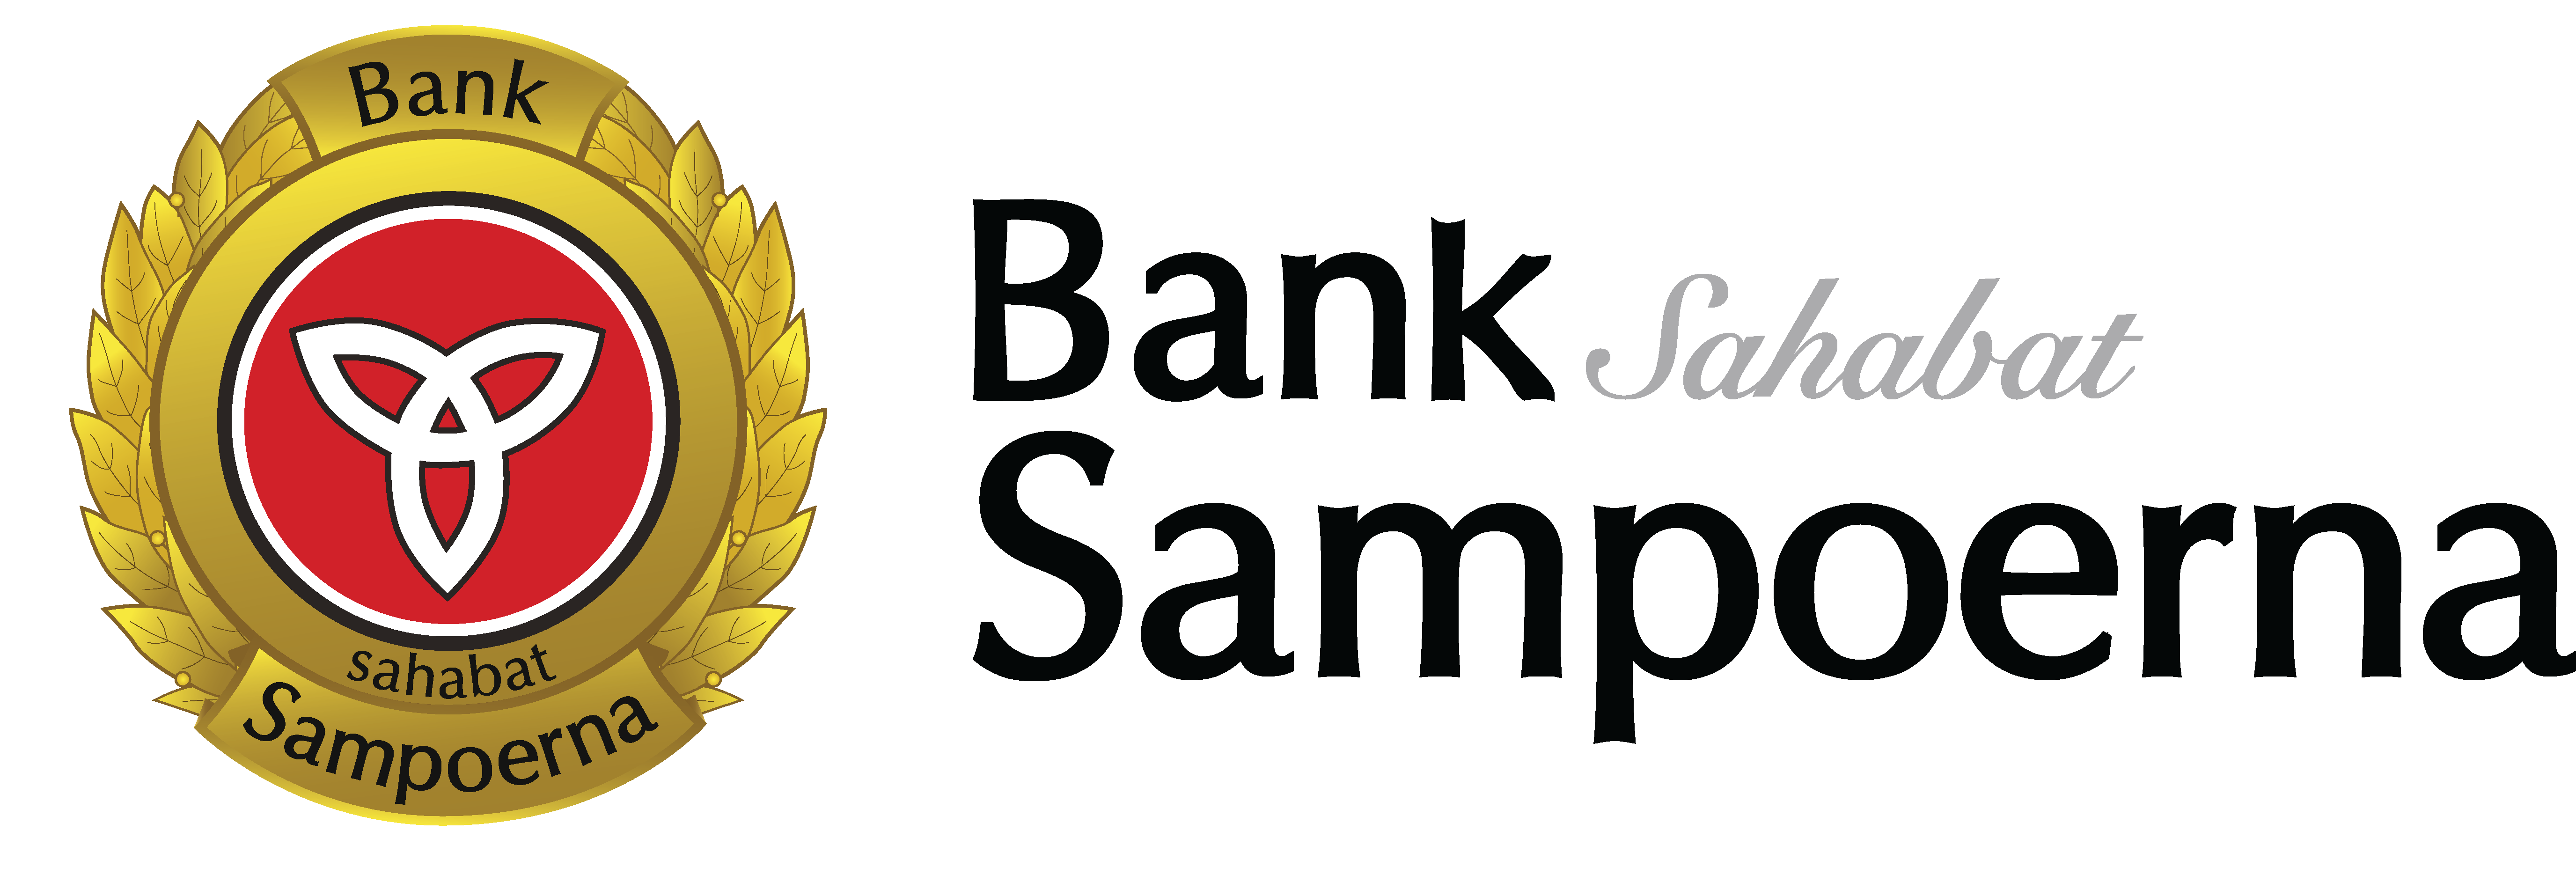 Banco Sampoerna